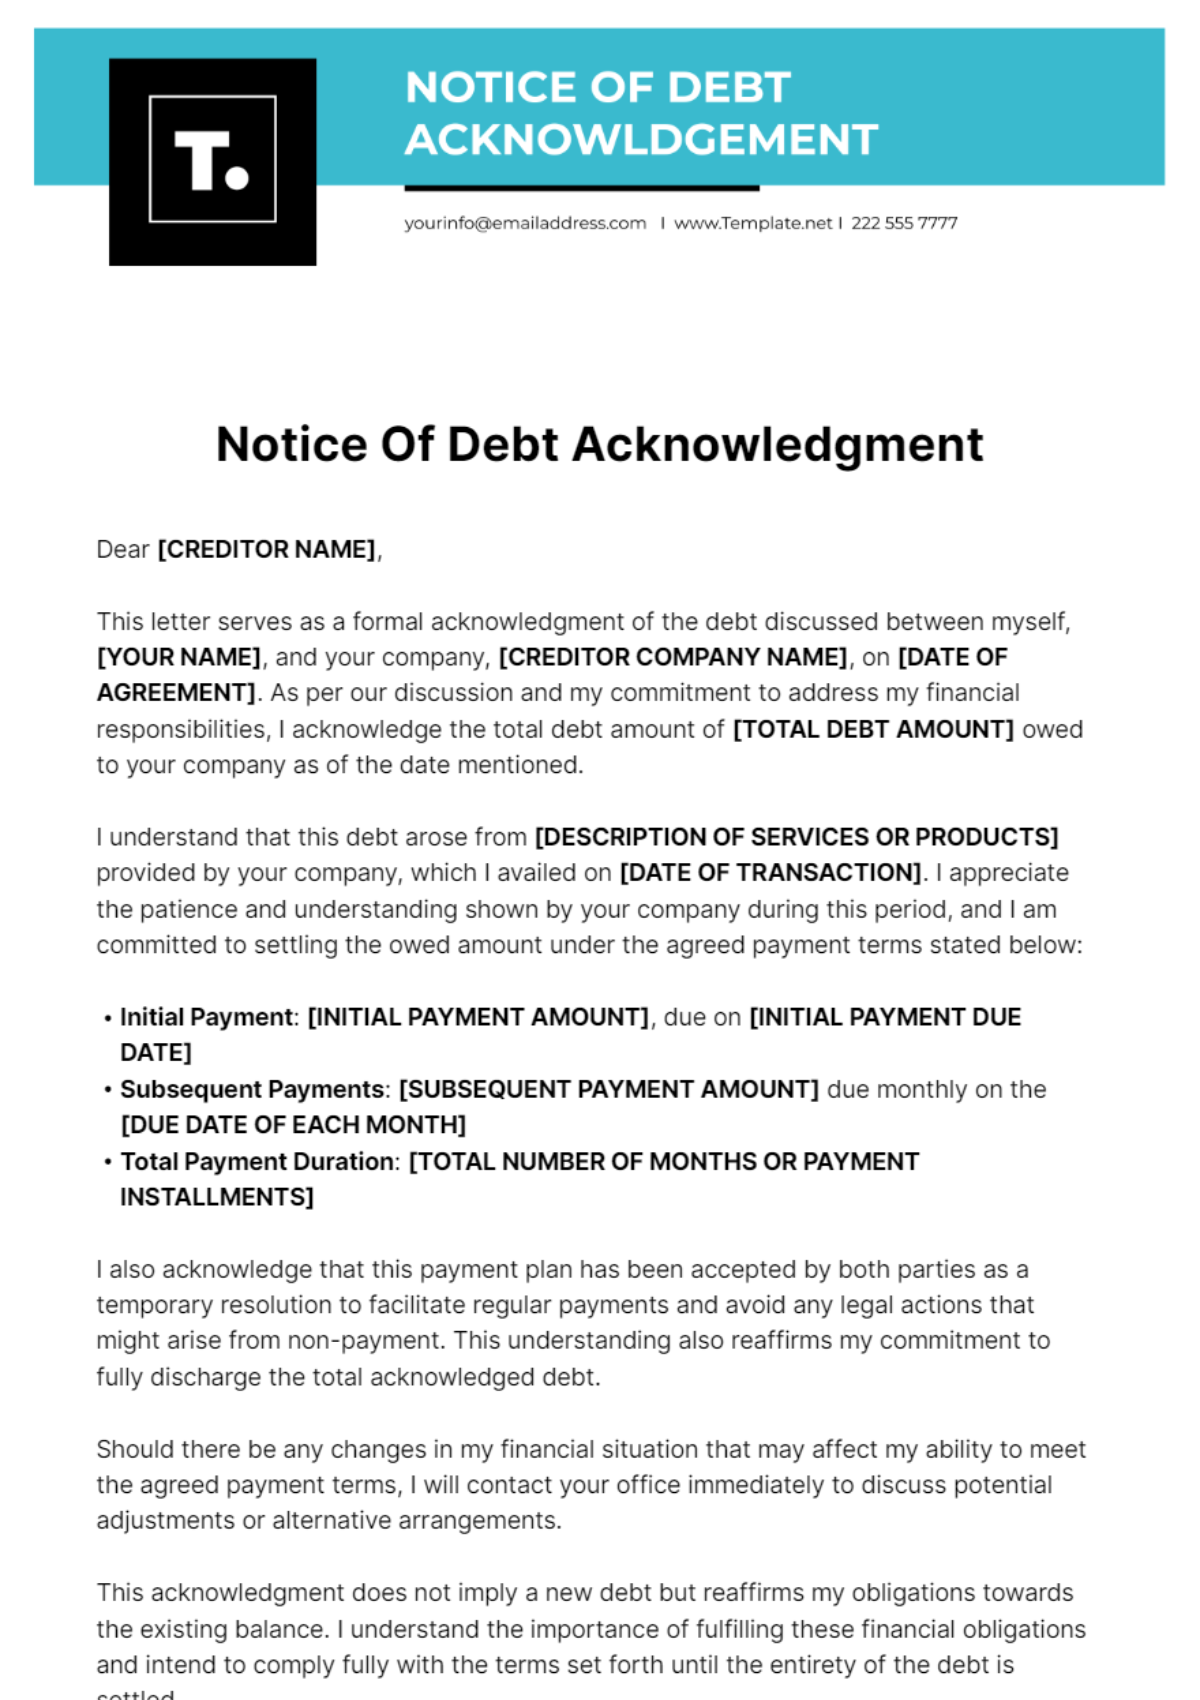 Notice Of Debt Acknowledgment Template